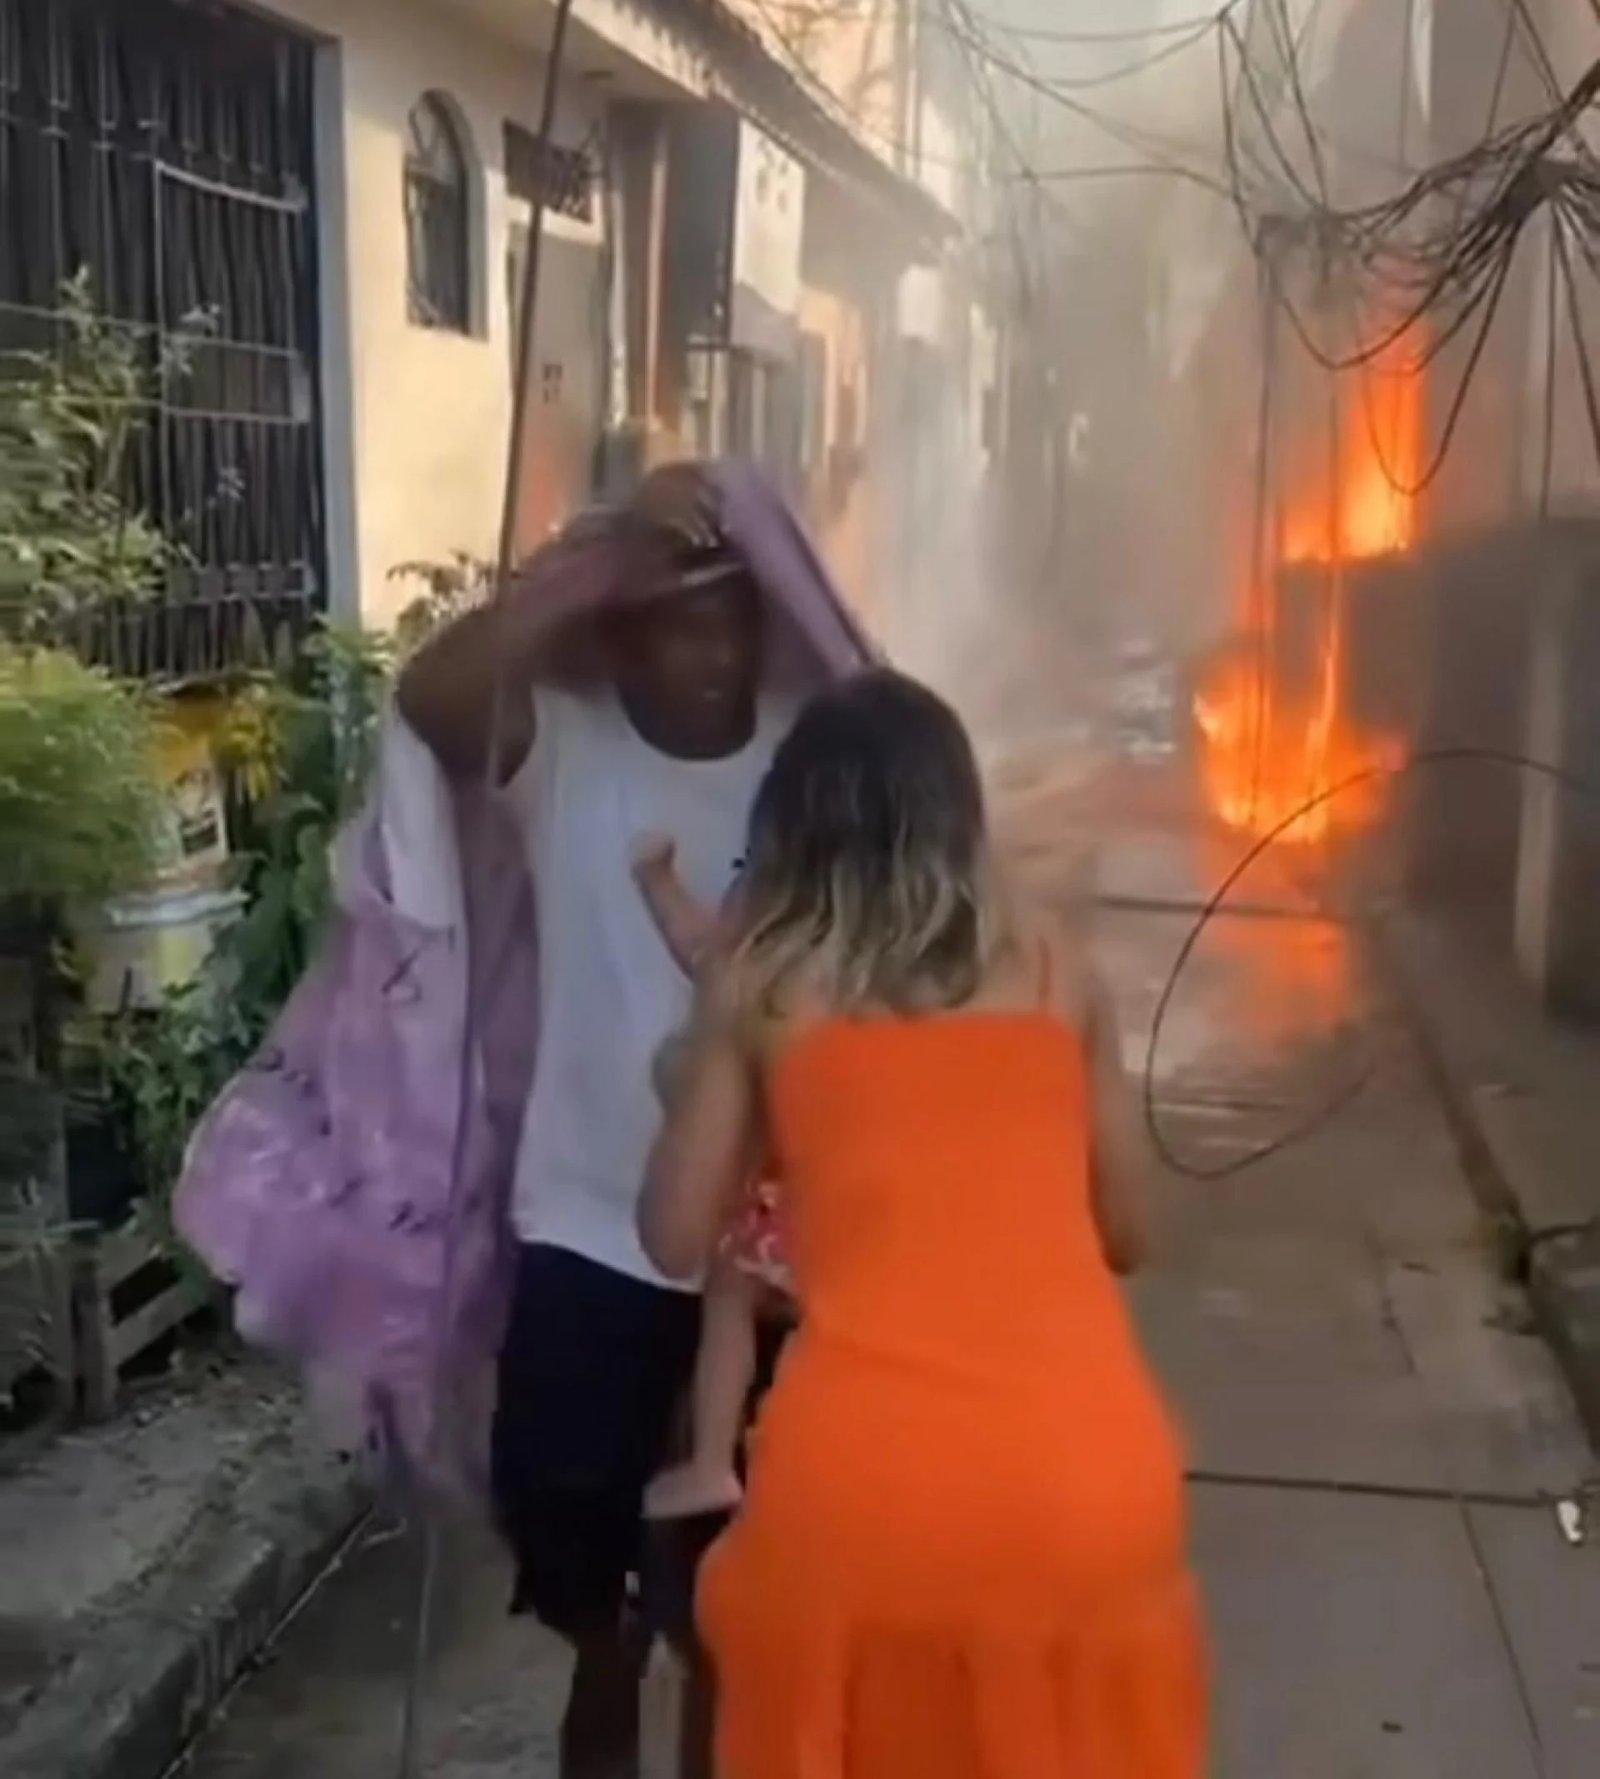 Moradores salvam crianças de incêndio em creche - Vídeo